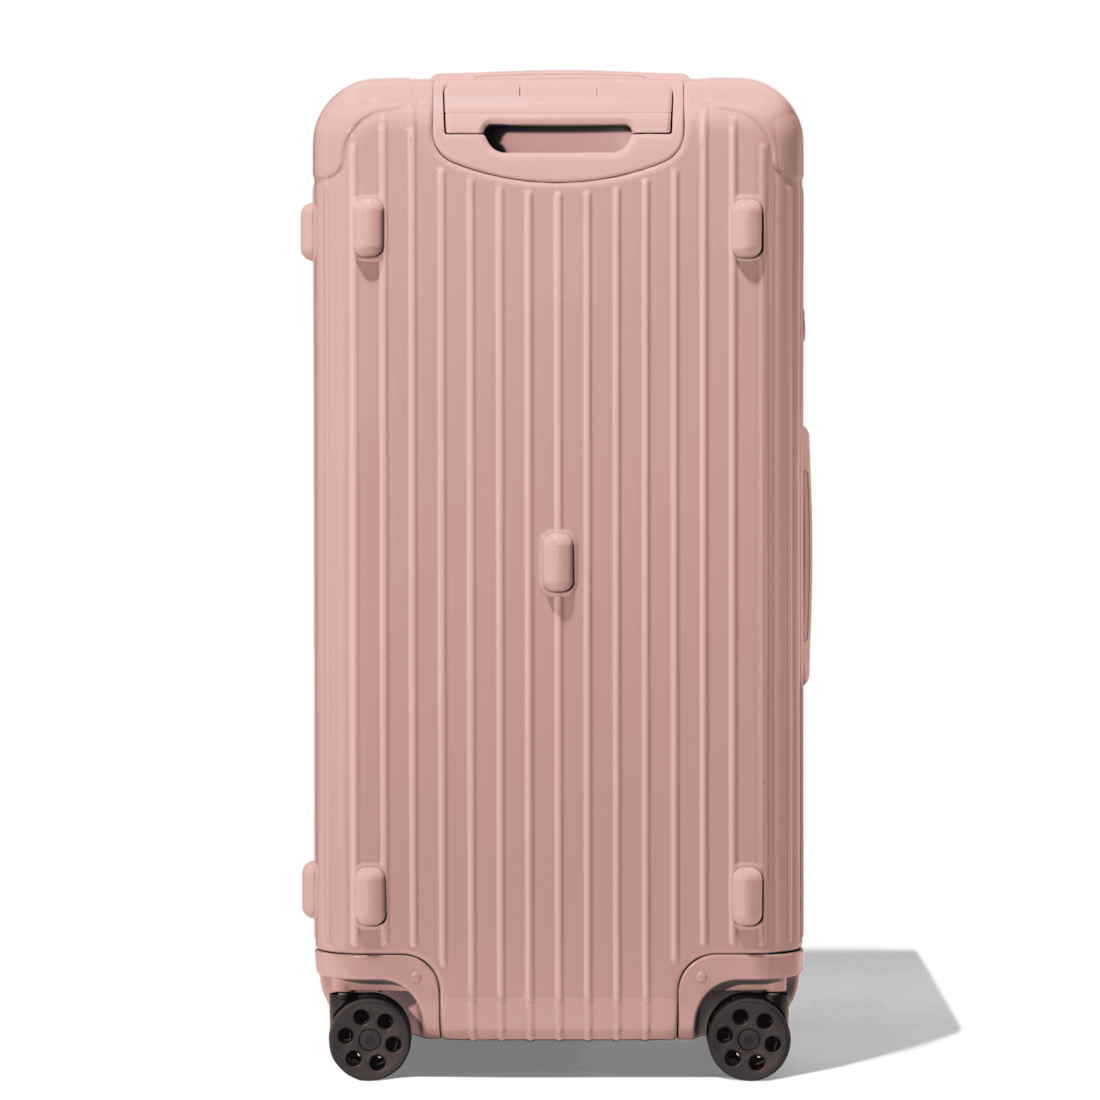 rimowa luggage large size